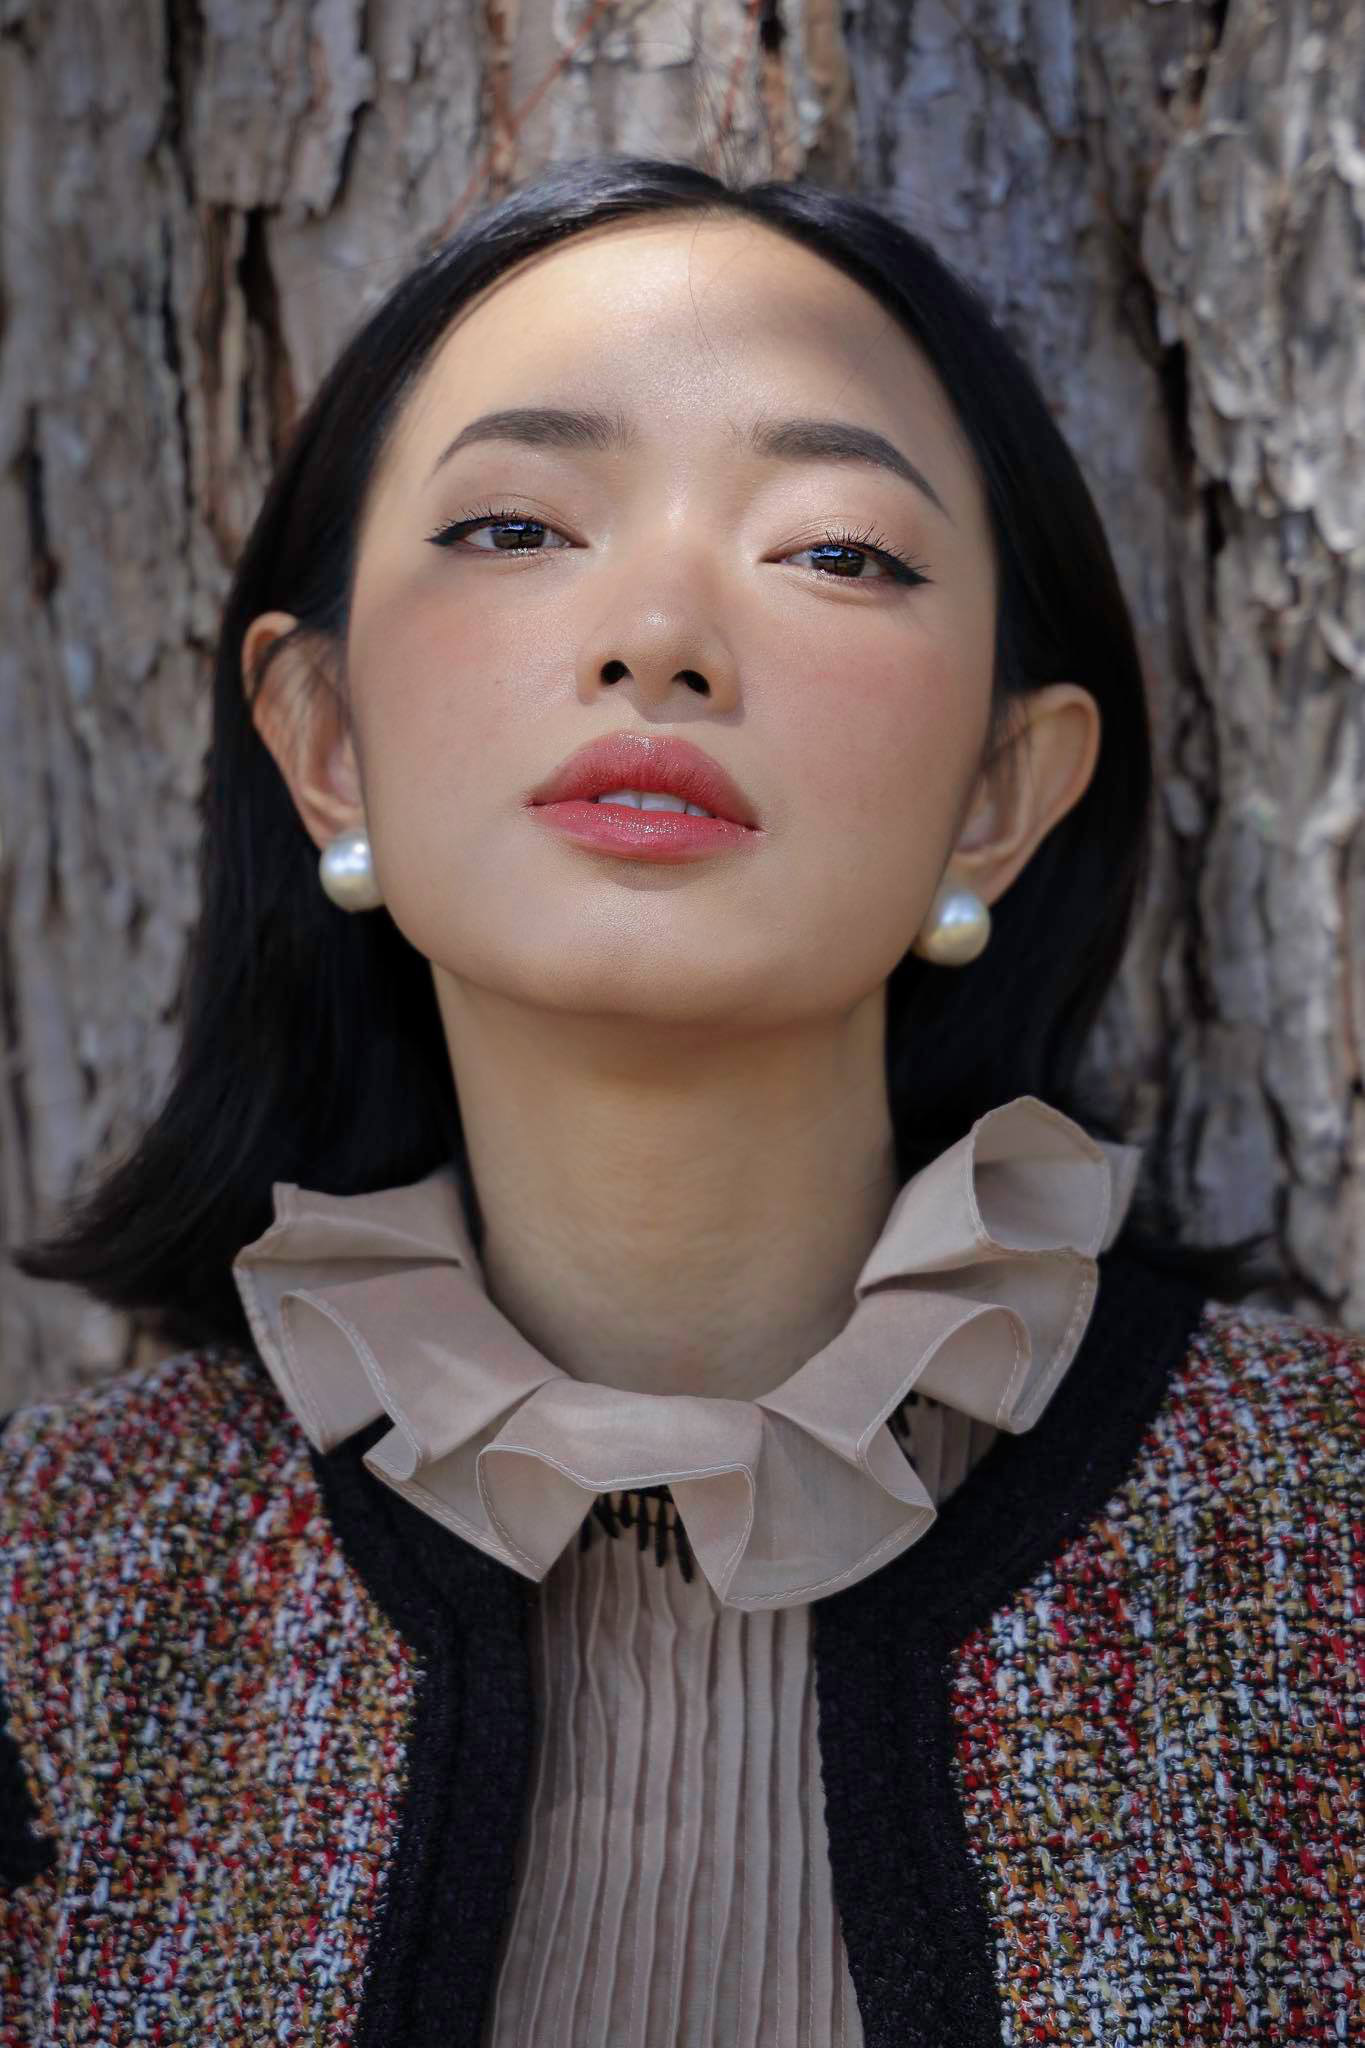 Châu Bùi: Fashionista sở hữu nhà tiền tỷ, vô số hàng hiệu ở tuổi 24 - Ảnh 7